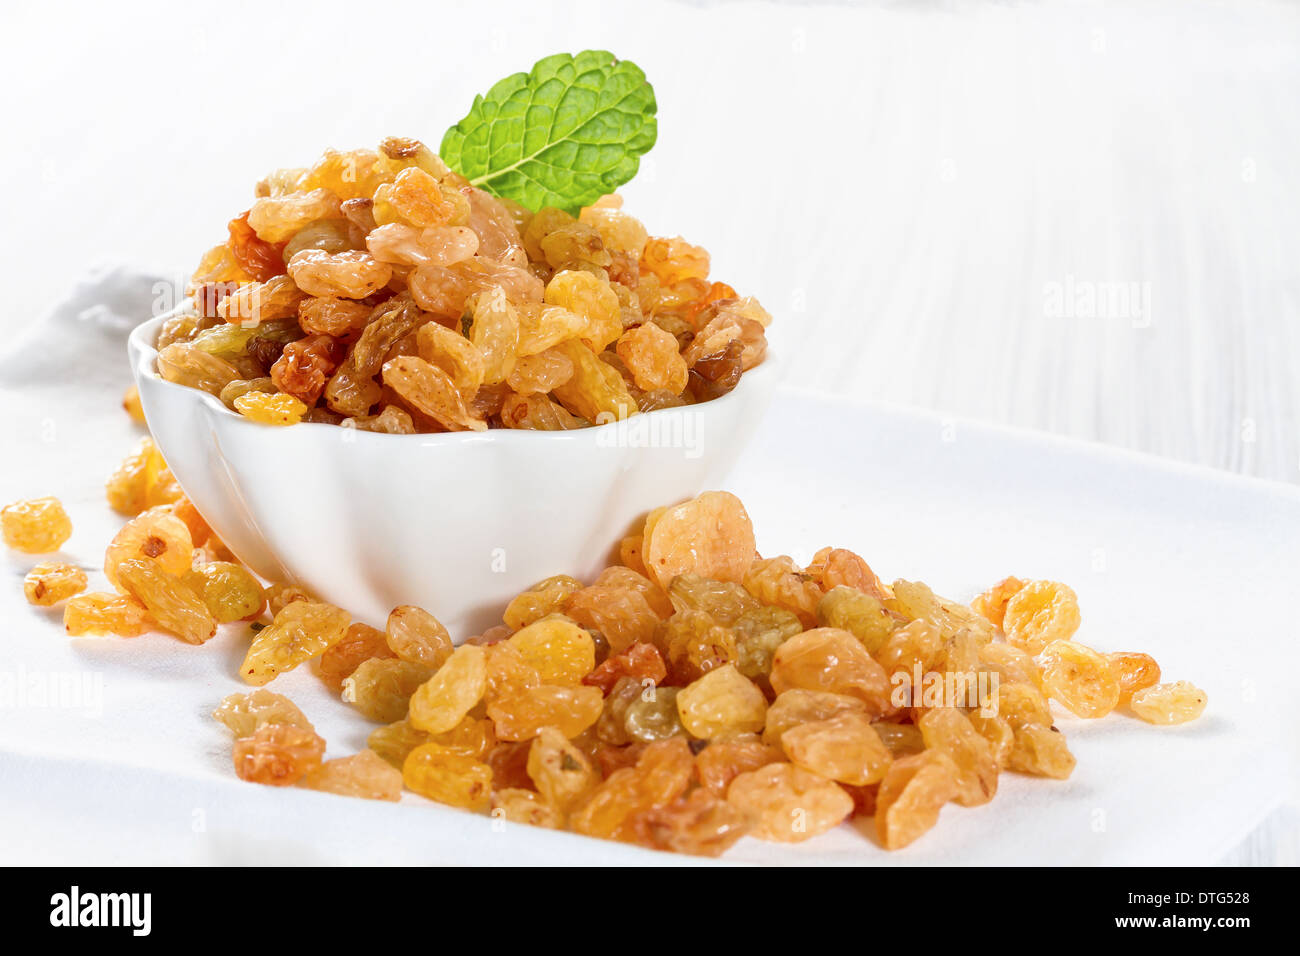 White raisins in a bowl Stock Photo - Alamy